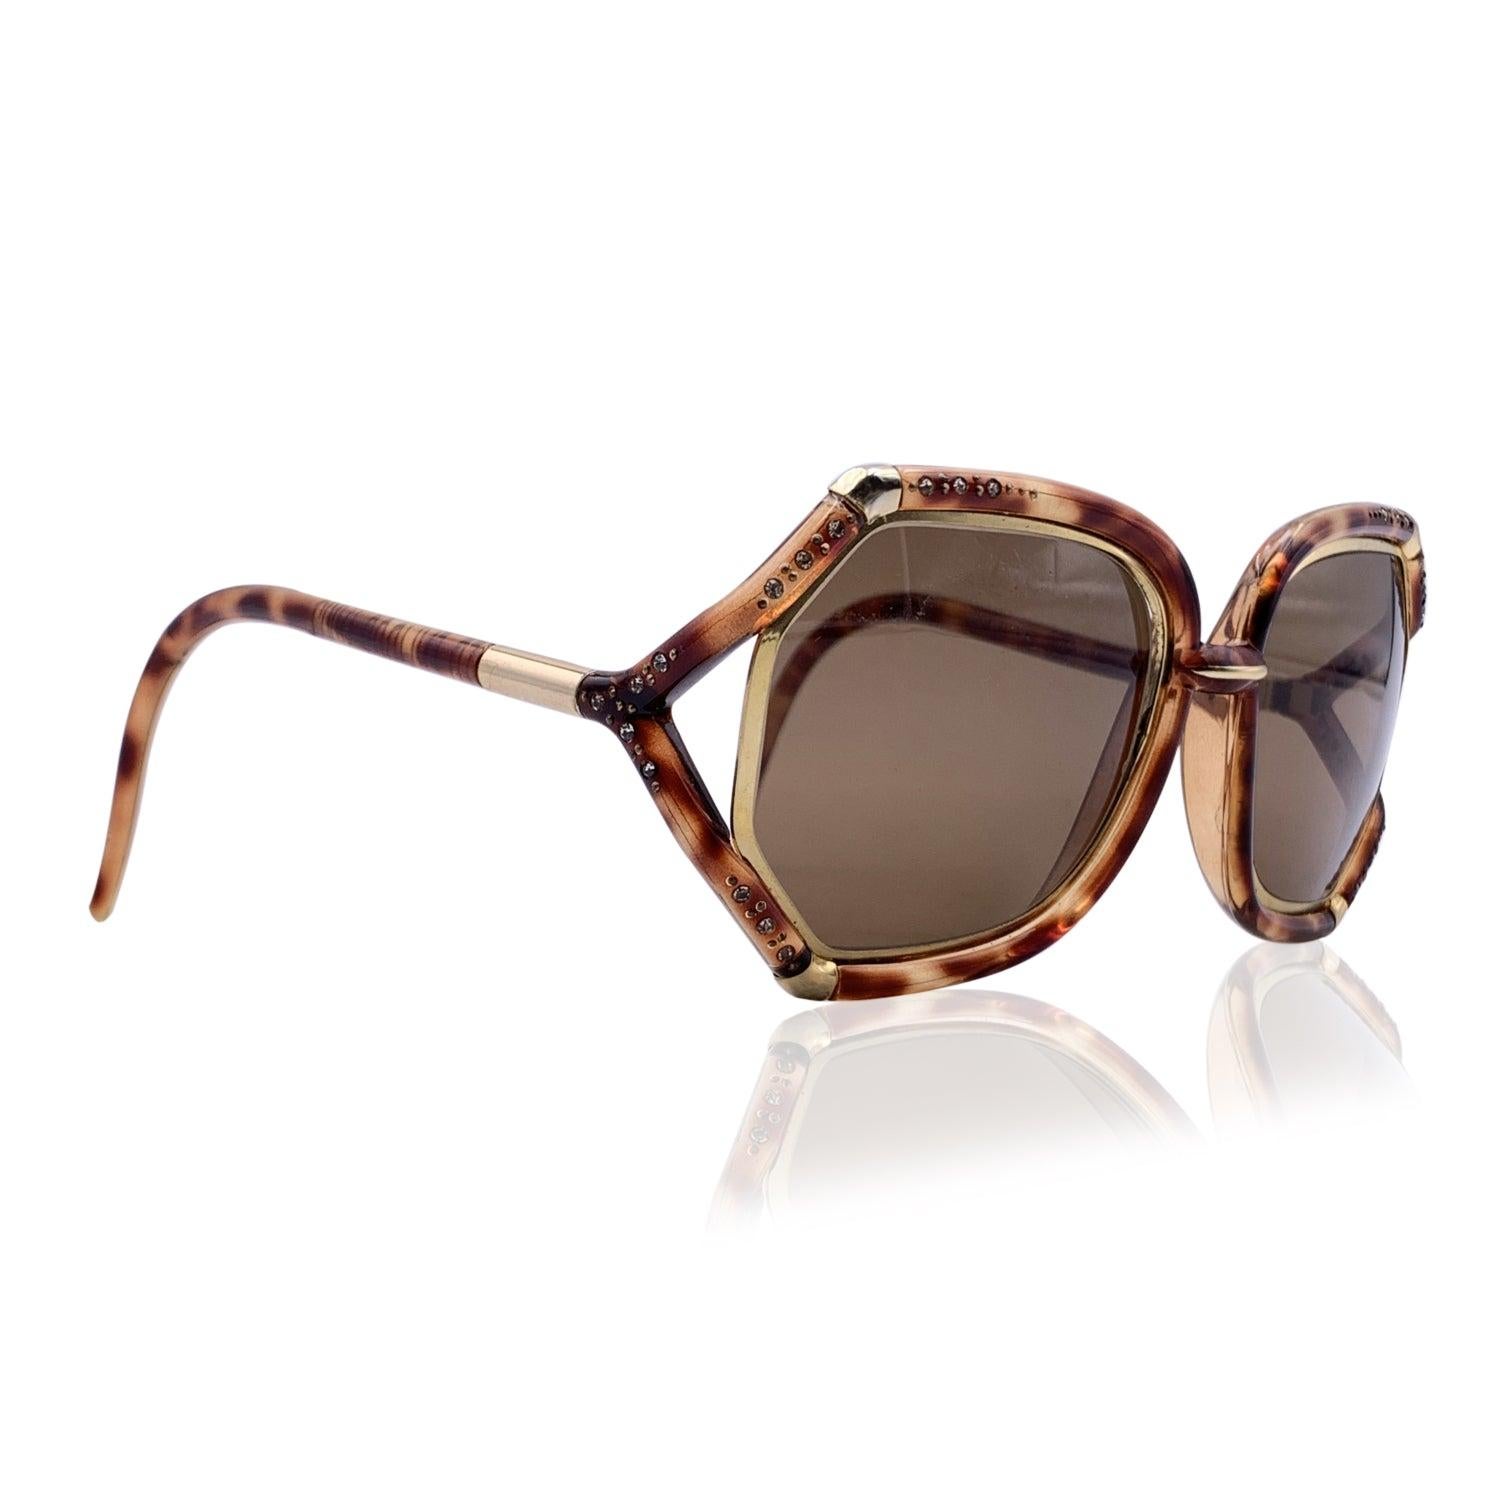 Rare lunettes de soleil oversize vintage TED LAPIDUS mod. TL1002 Fabriqué en France. Monture en acétate brun découpé, avec finition en métal doré. Embellissement en cristaux sur le devant. Verres bruns. Protection UV à 100 %. Le même modèle a été